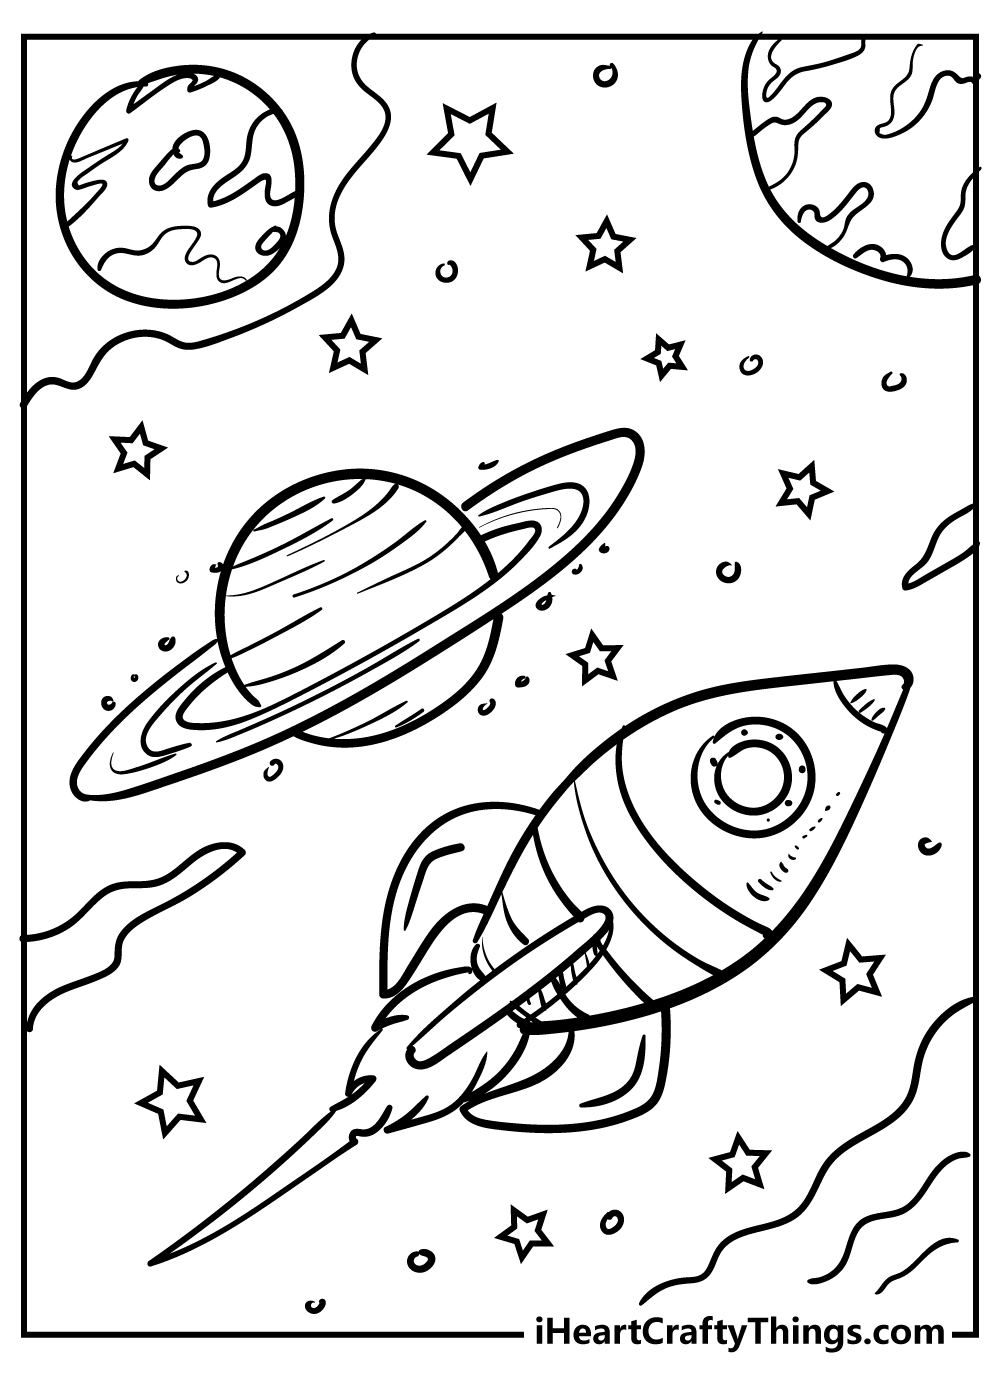 Раскраска космос для детей 4 5. Космос раскраска для детей. Раскраска. В космосе. Раскраска космос и планеты для детей. Космические раскраски для детей.